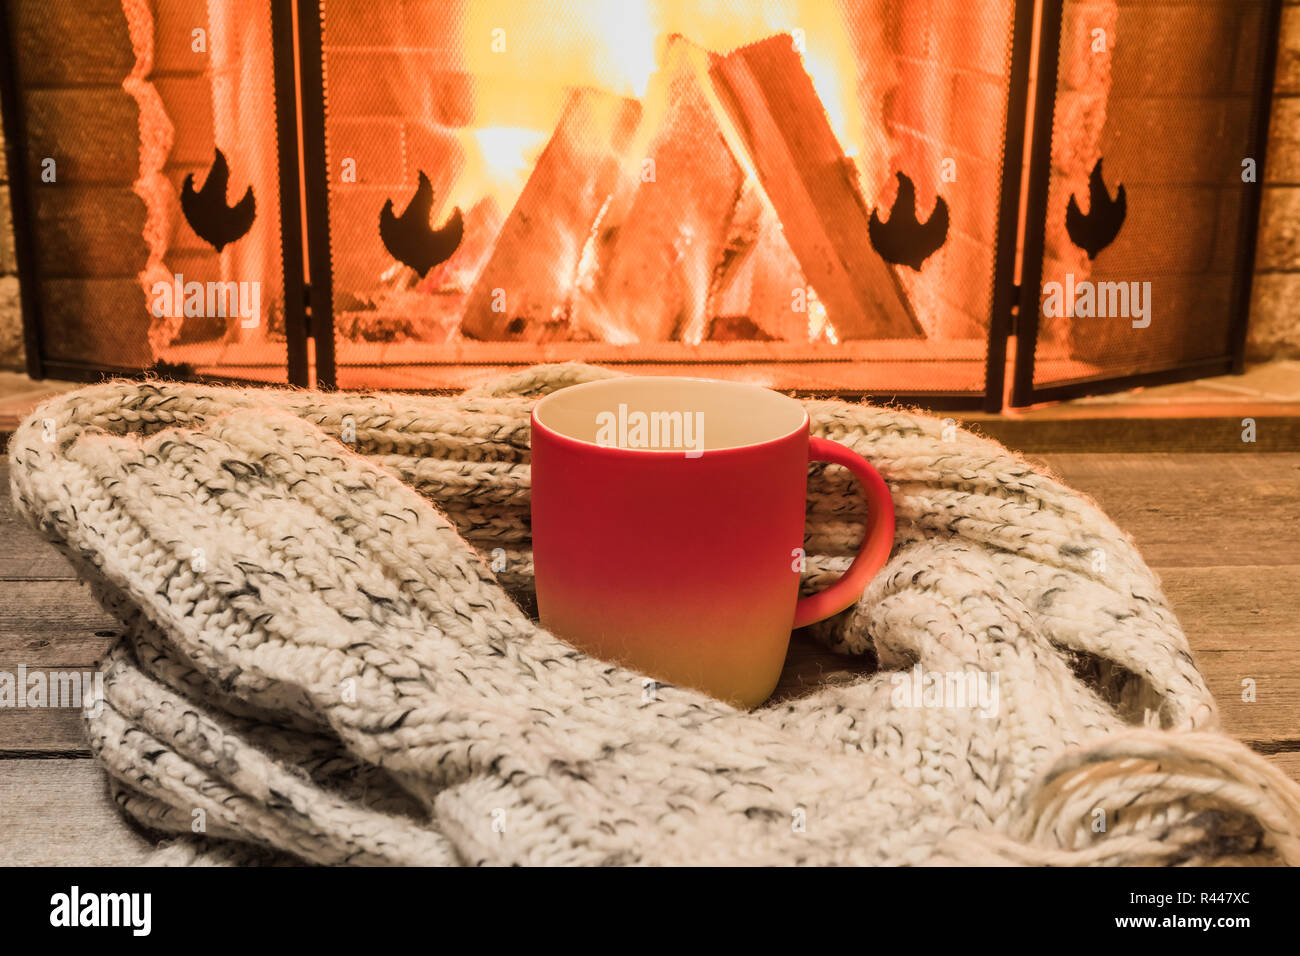 Rot Tasse mit heißem Tee und gemütlich warmen Schal in der Nähe von Kamin, im Landhaus, winter Urlaub, horizontal. Stockfoto